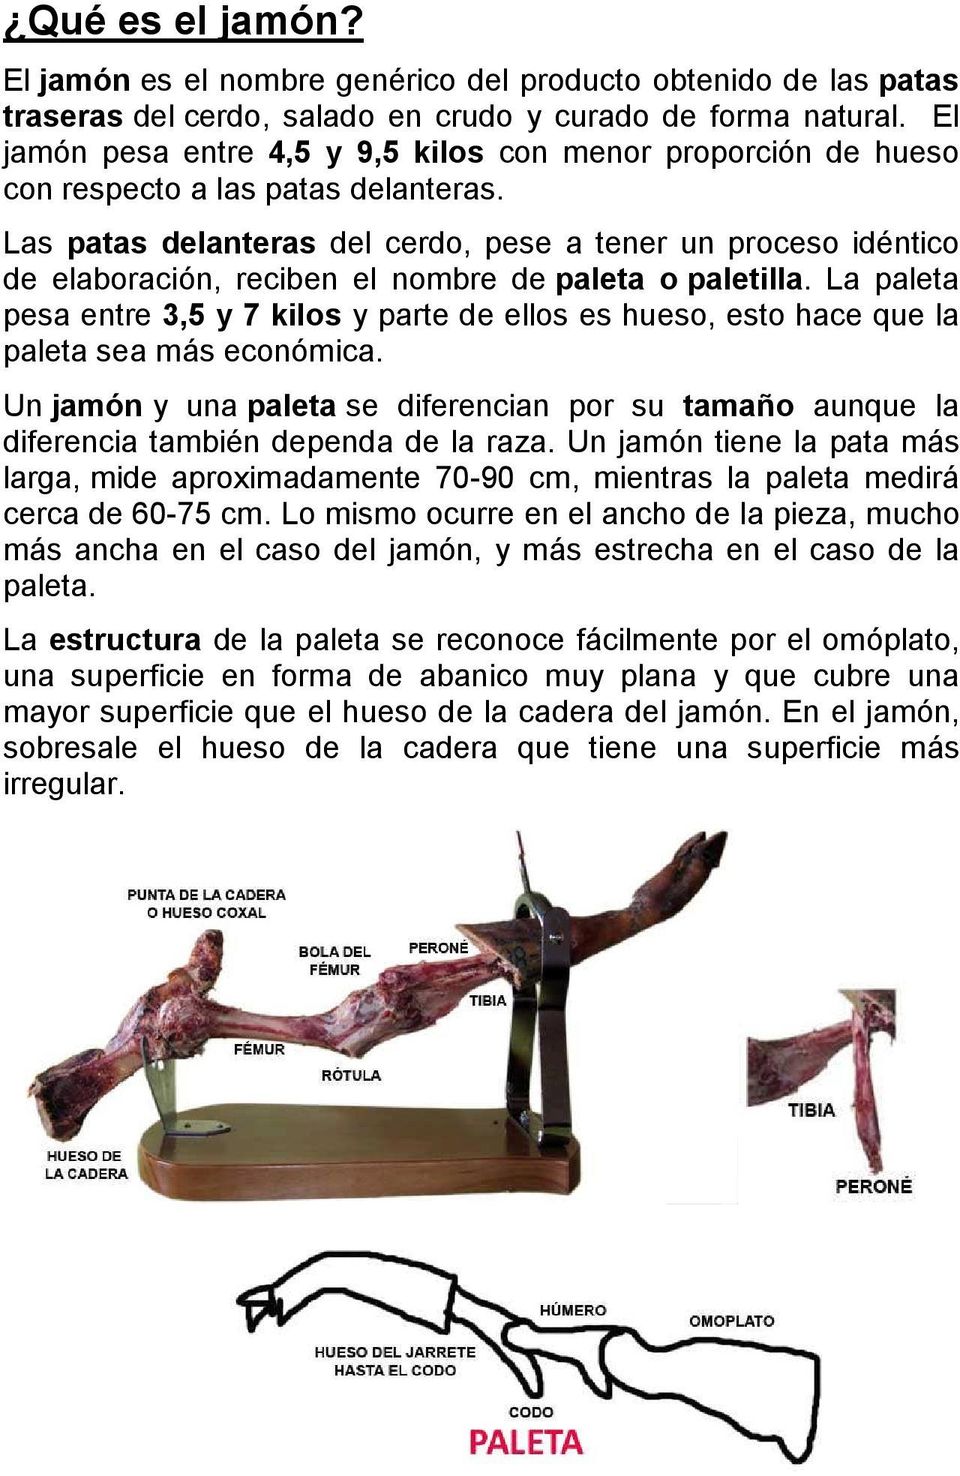 Las patas delanteras del cerdo, pese a tener un proceso idéntico de elaboración, reciben el nombre de paleta o paletilla.